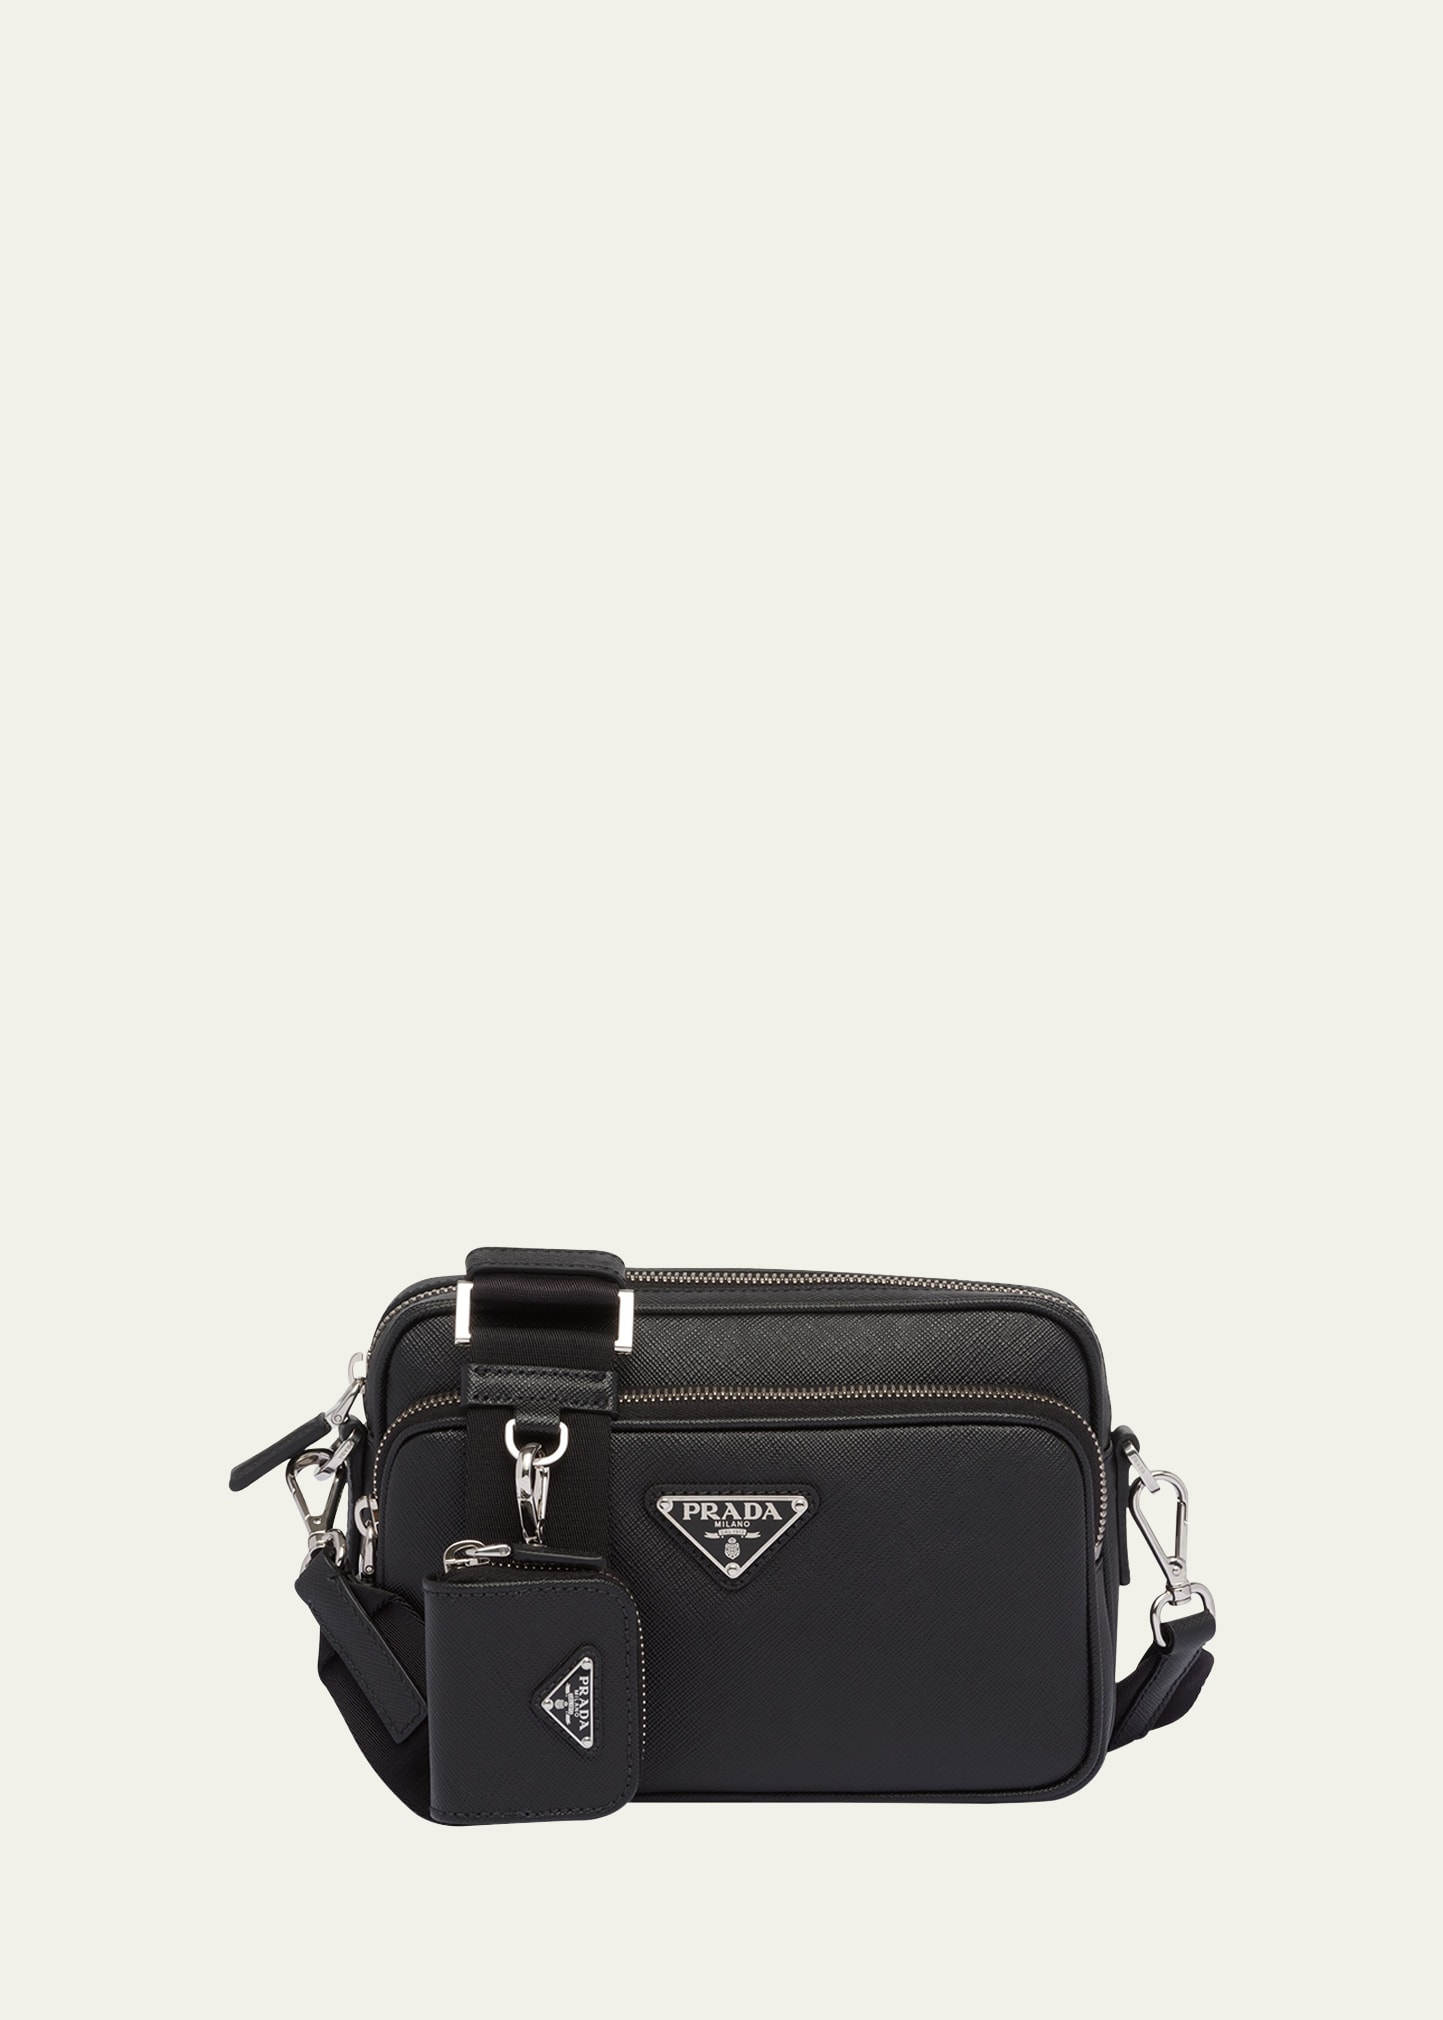 Prada Men's Saffiano Leather Crossbody Bag With Pouch In F0002 Nero